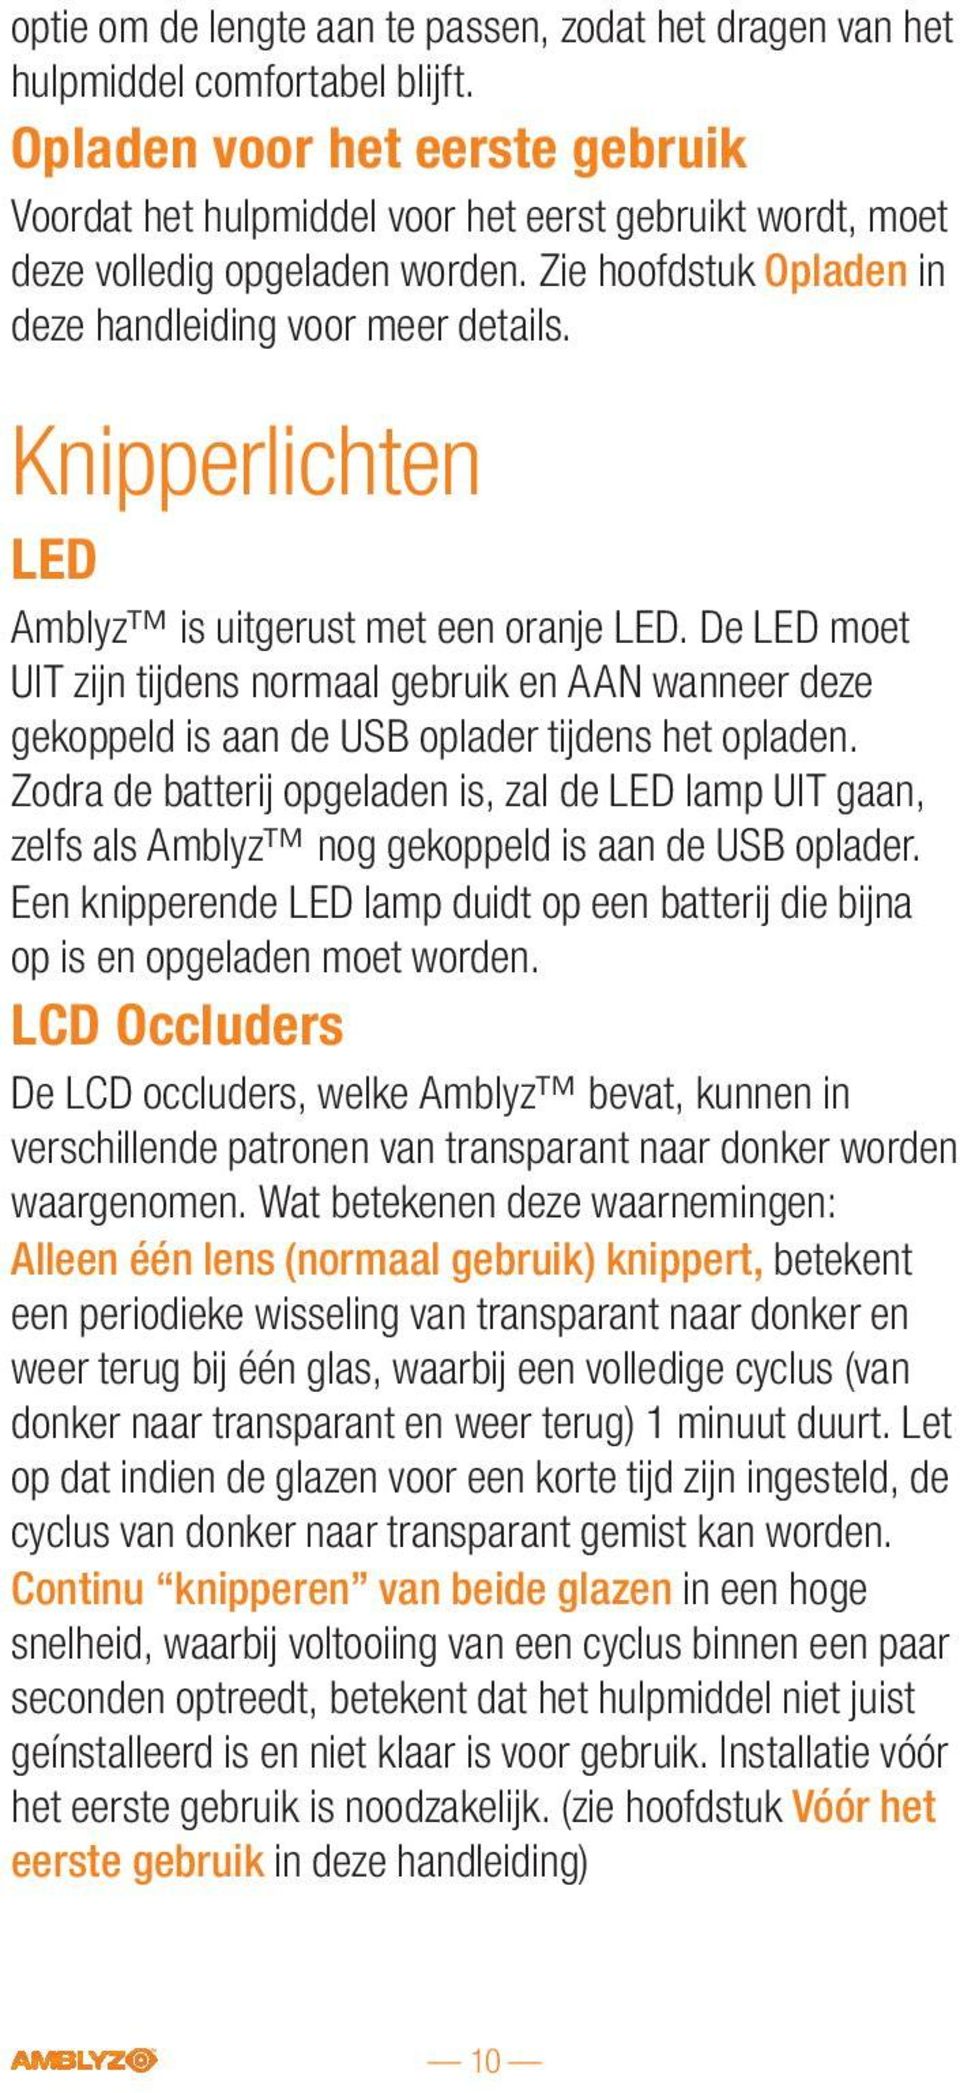 Knipperlichten LED Amblyz is uitgerust met een oranje LED. De LED moet UIT zijn tijdens normaal gebruik en AAN wanneer deze gekoppeld is aan de USB oplader tijdens het opladen.